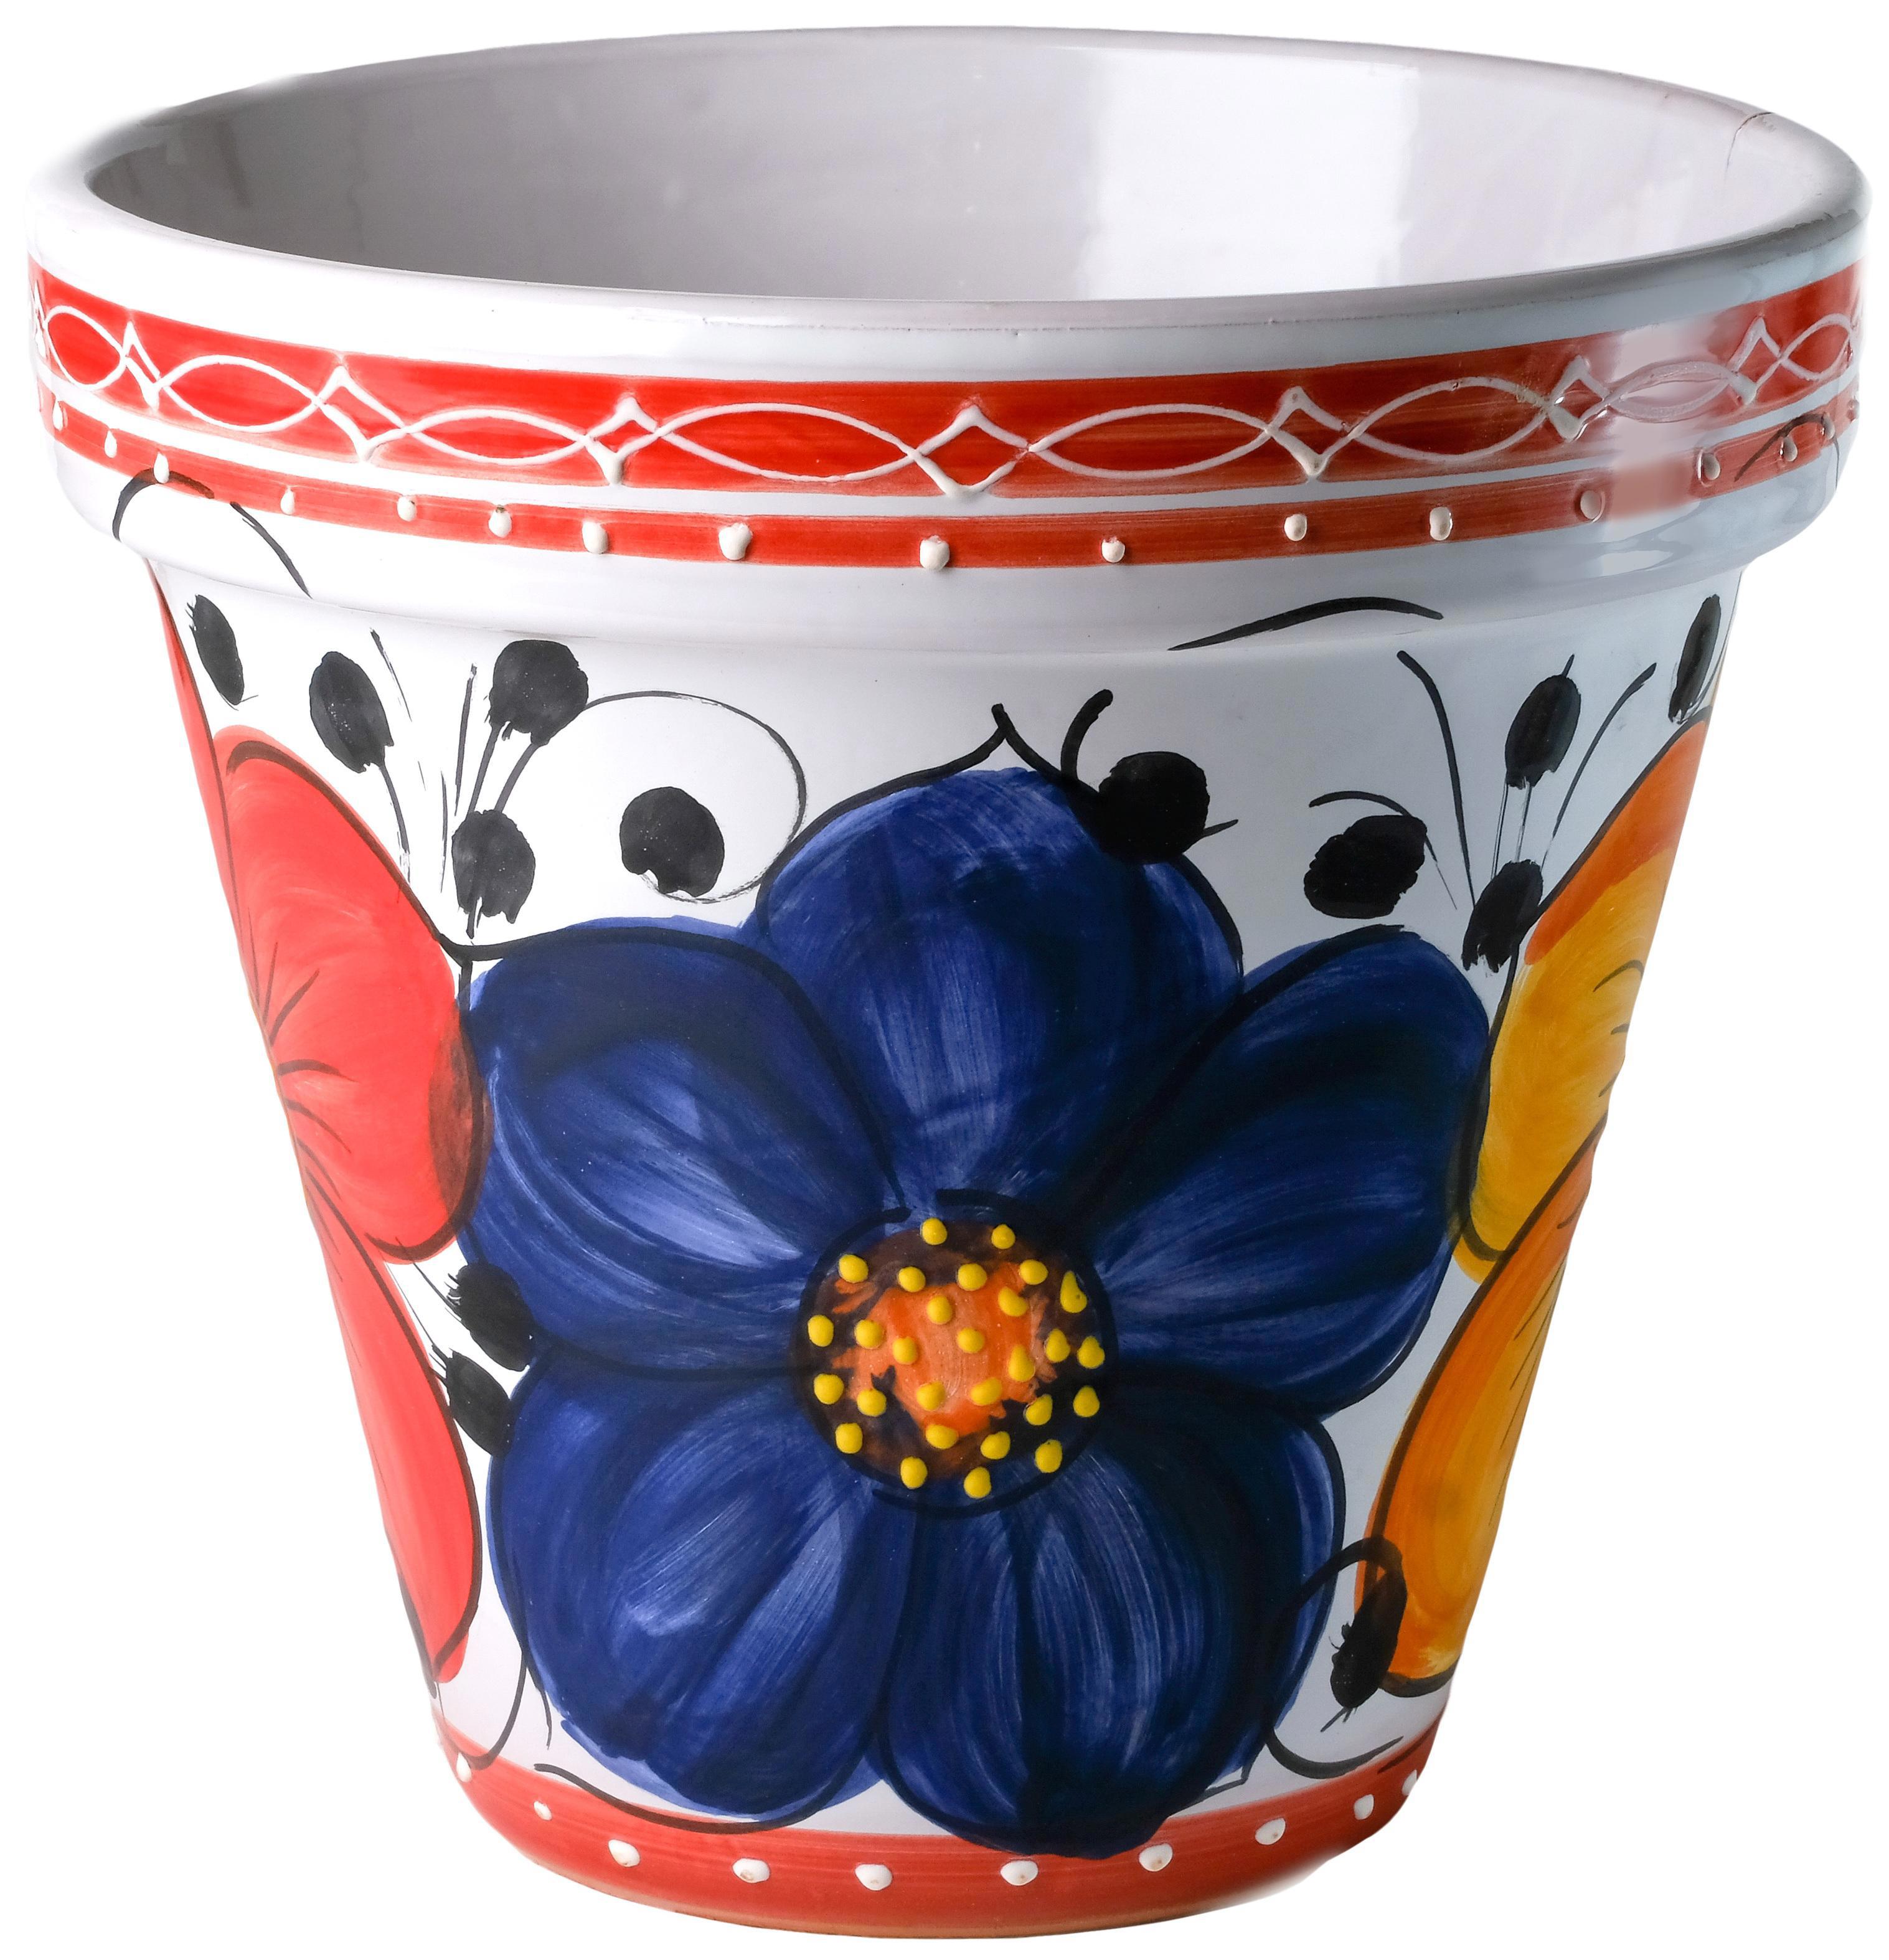 90410993 Горшок цветочный 301531 26.3 см 7 л керамика разноцветный КЛАССИКА Maceta de maquina STLM-0219641 ИСПАНСКАЯ КЕРАМИКА